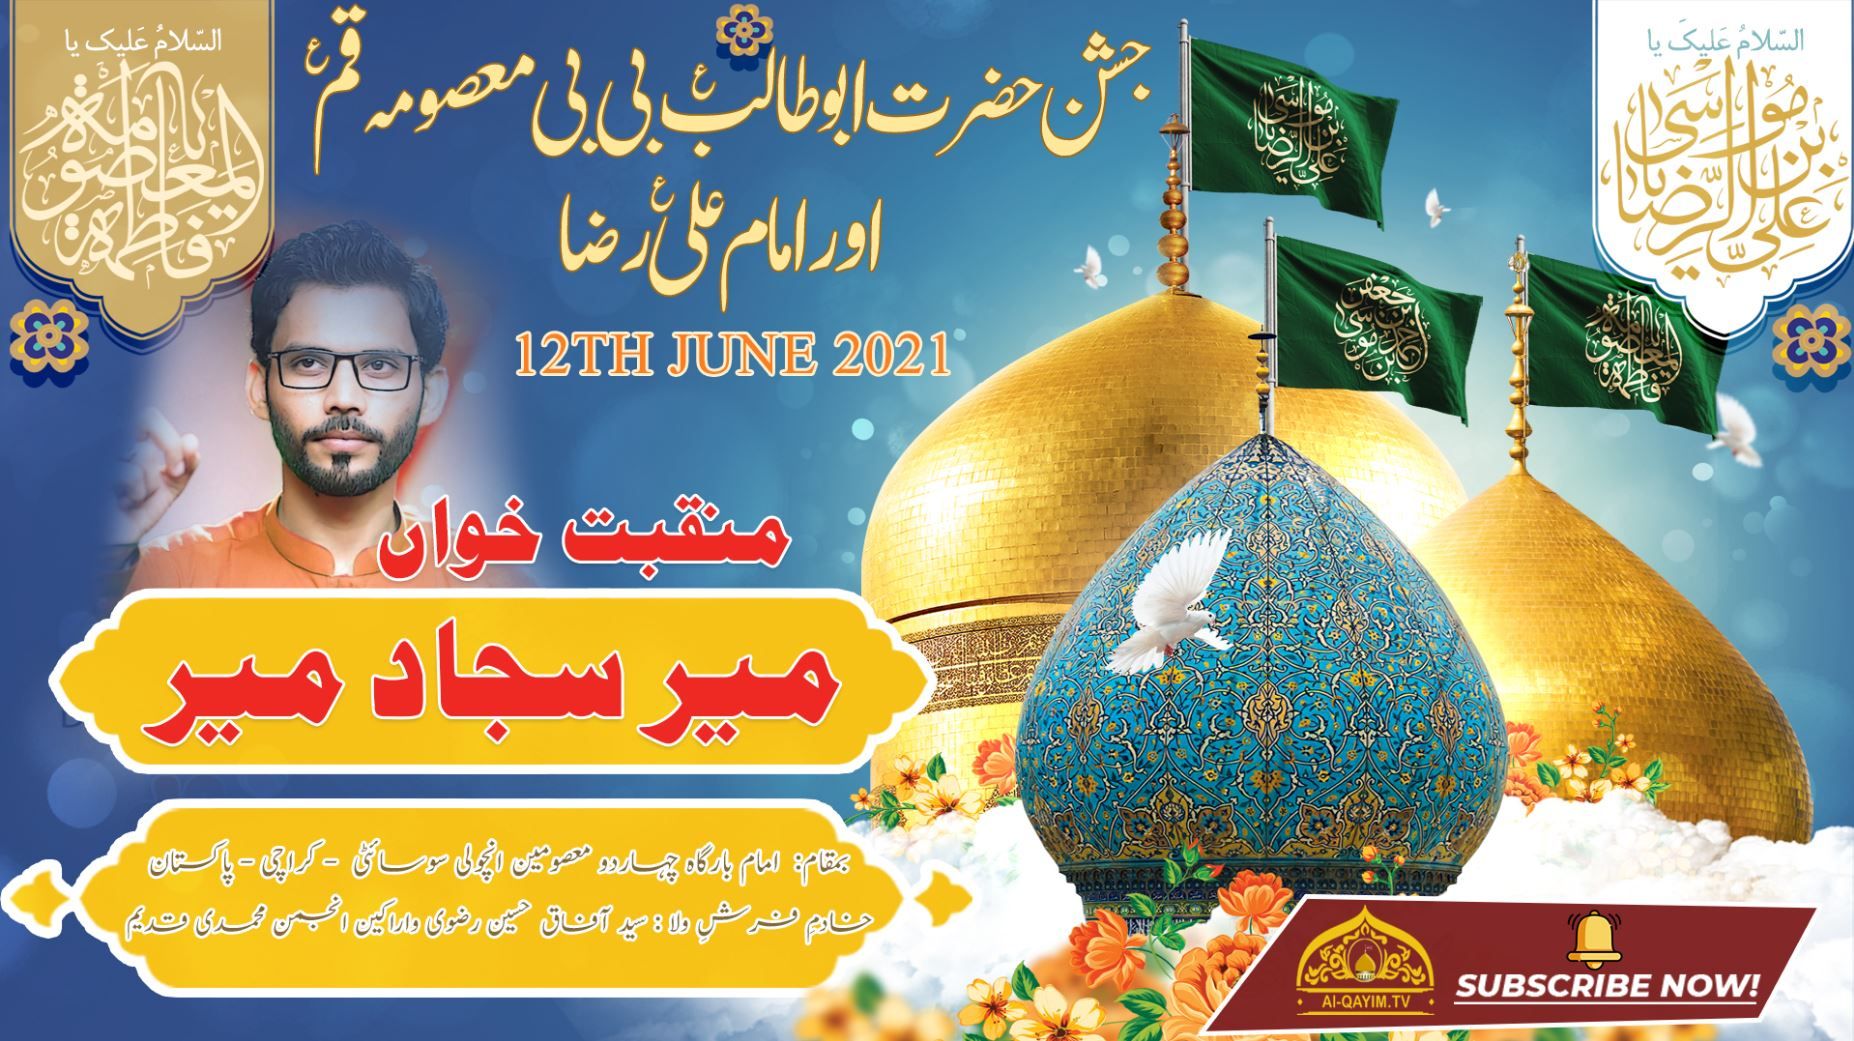 Manqabat | Mir Sajjad Mir | Jashan Bibi Masooma & Imam Ali Raza - 12 June 2021 - Ancholi - Karachi